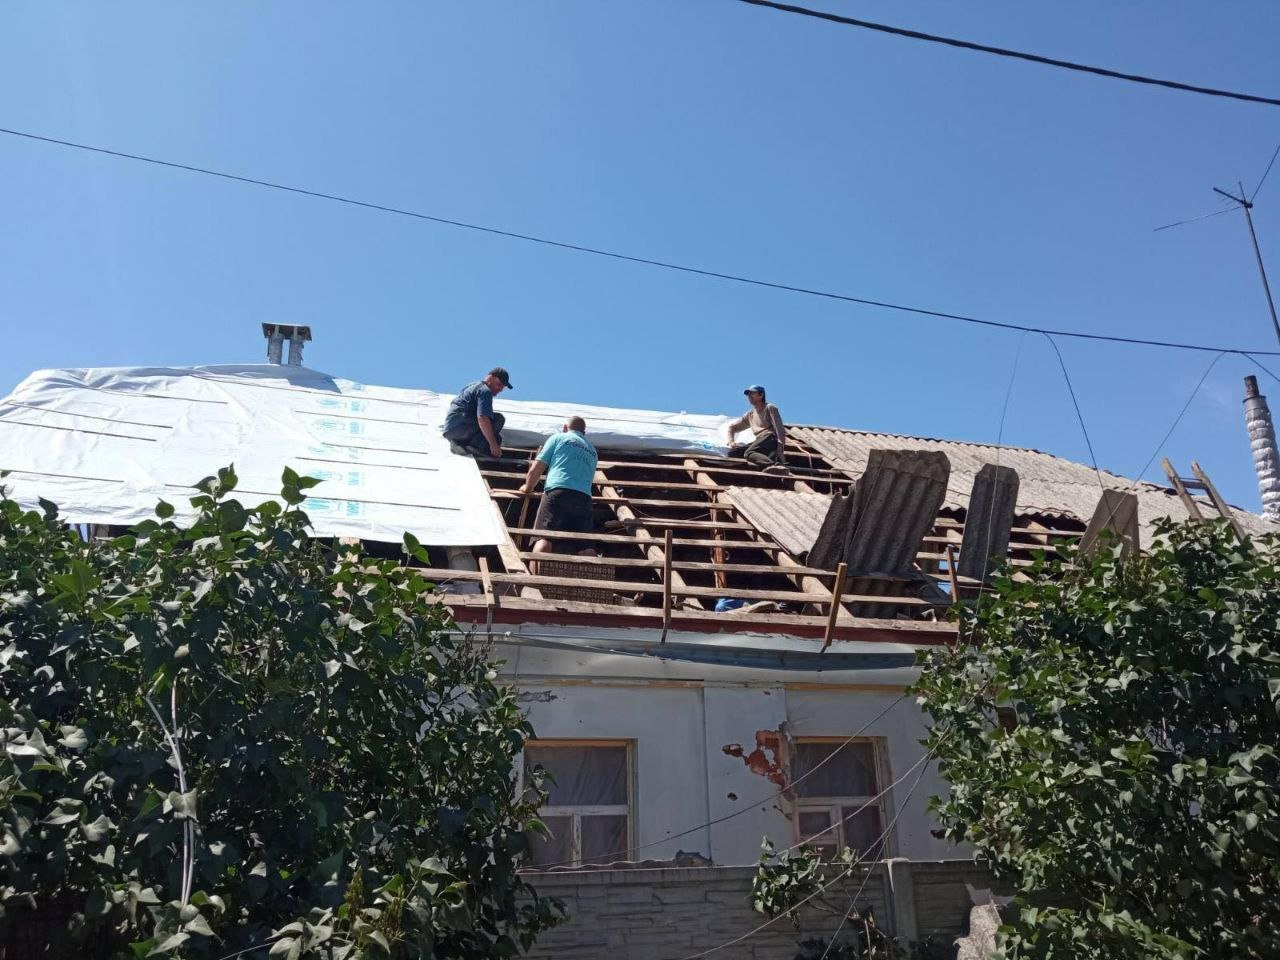 UNHCR noodherstelpakketten maken het mogelijk om beschadigde woningen in Oekraïne te herstellen, zomer 2022. © UNHCR